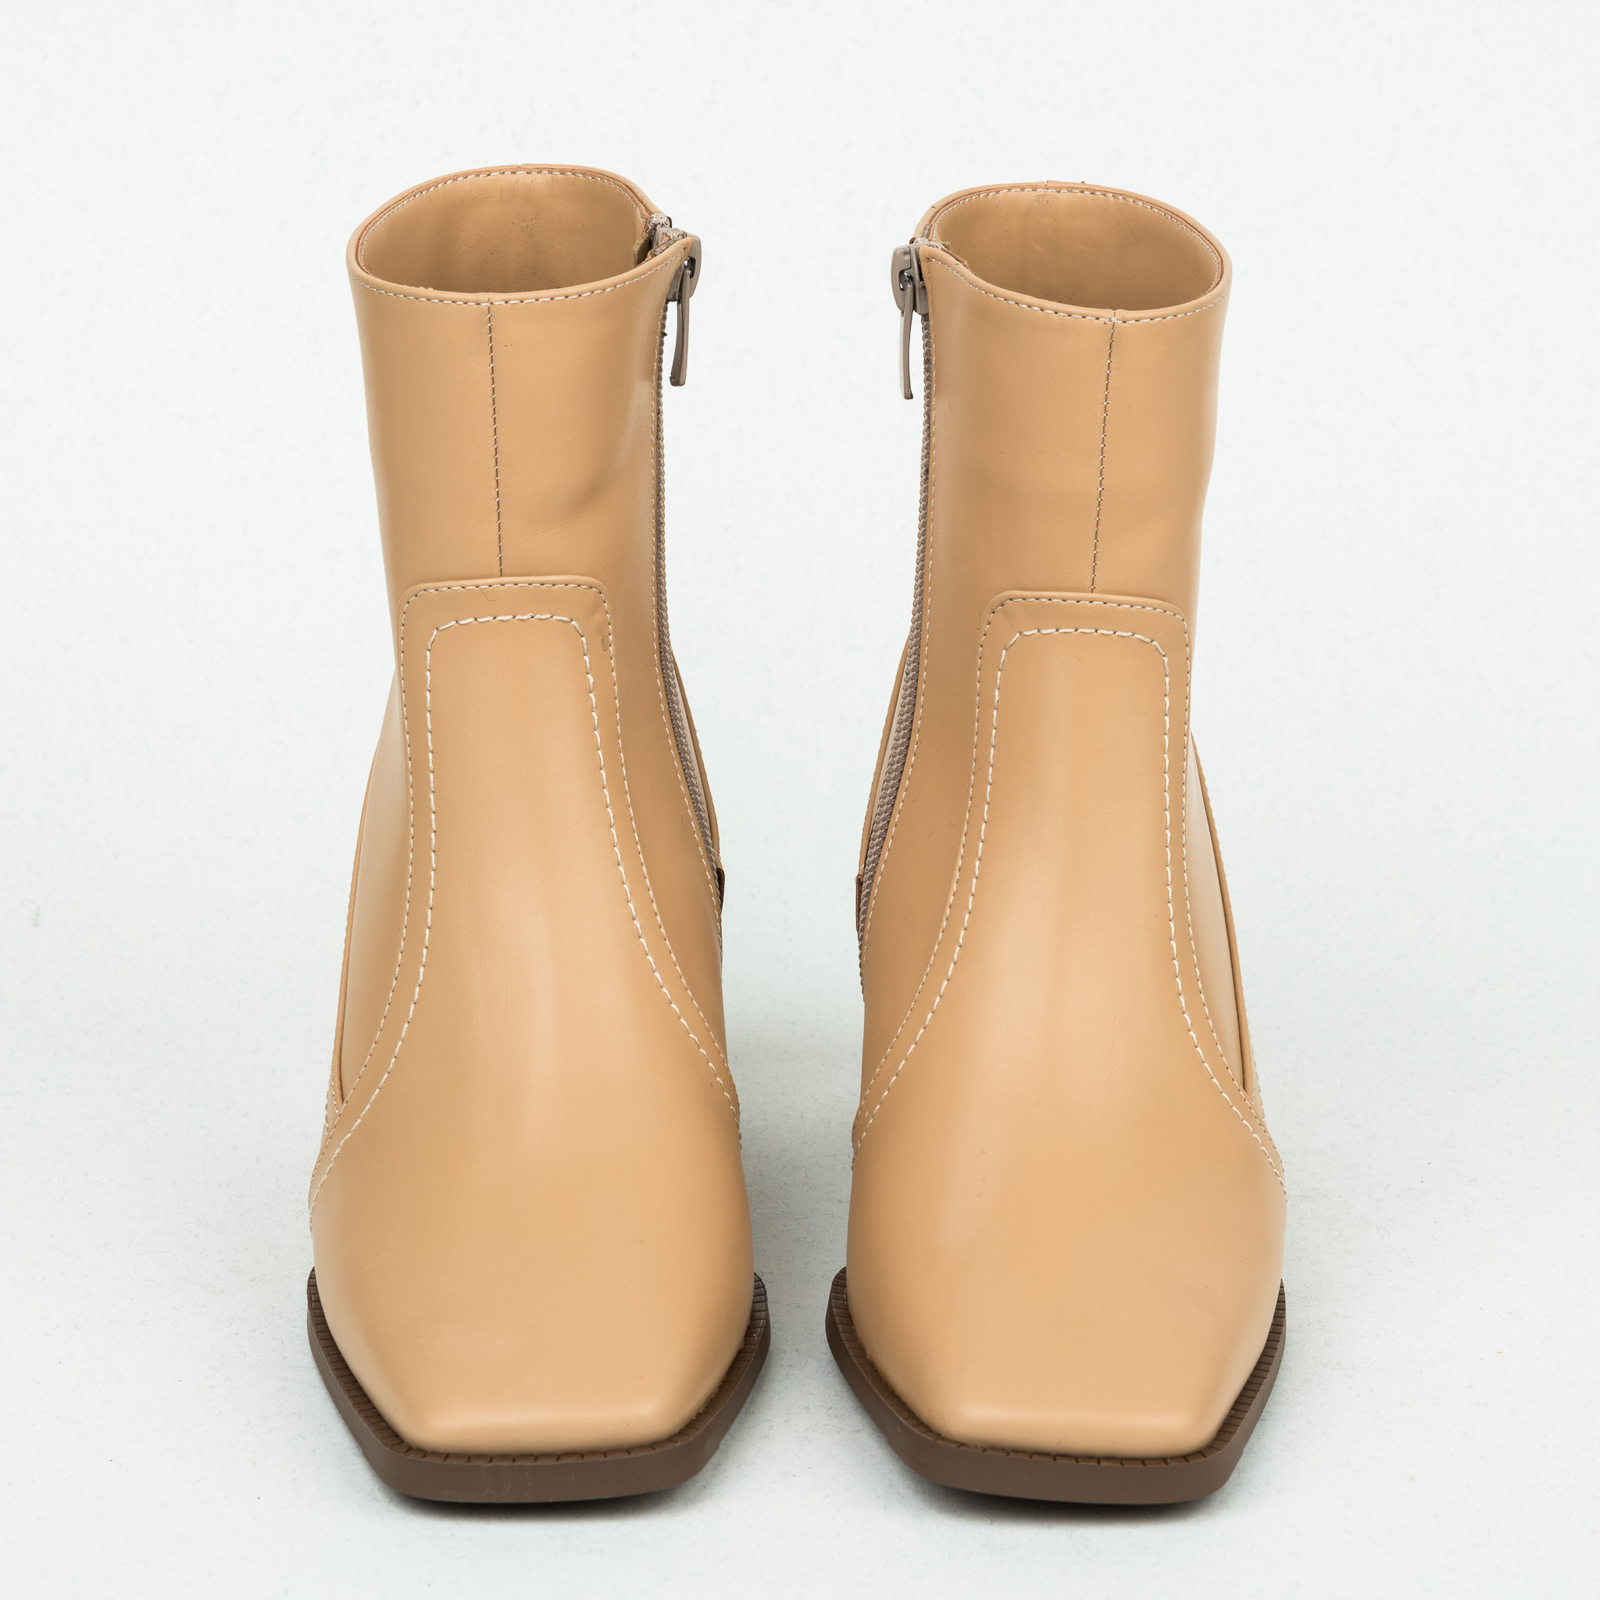 Women ankle boots B163 - BEIGE